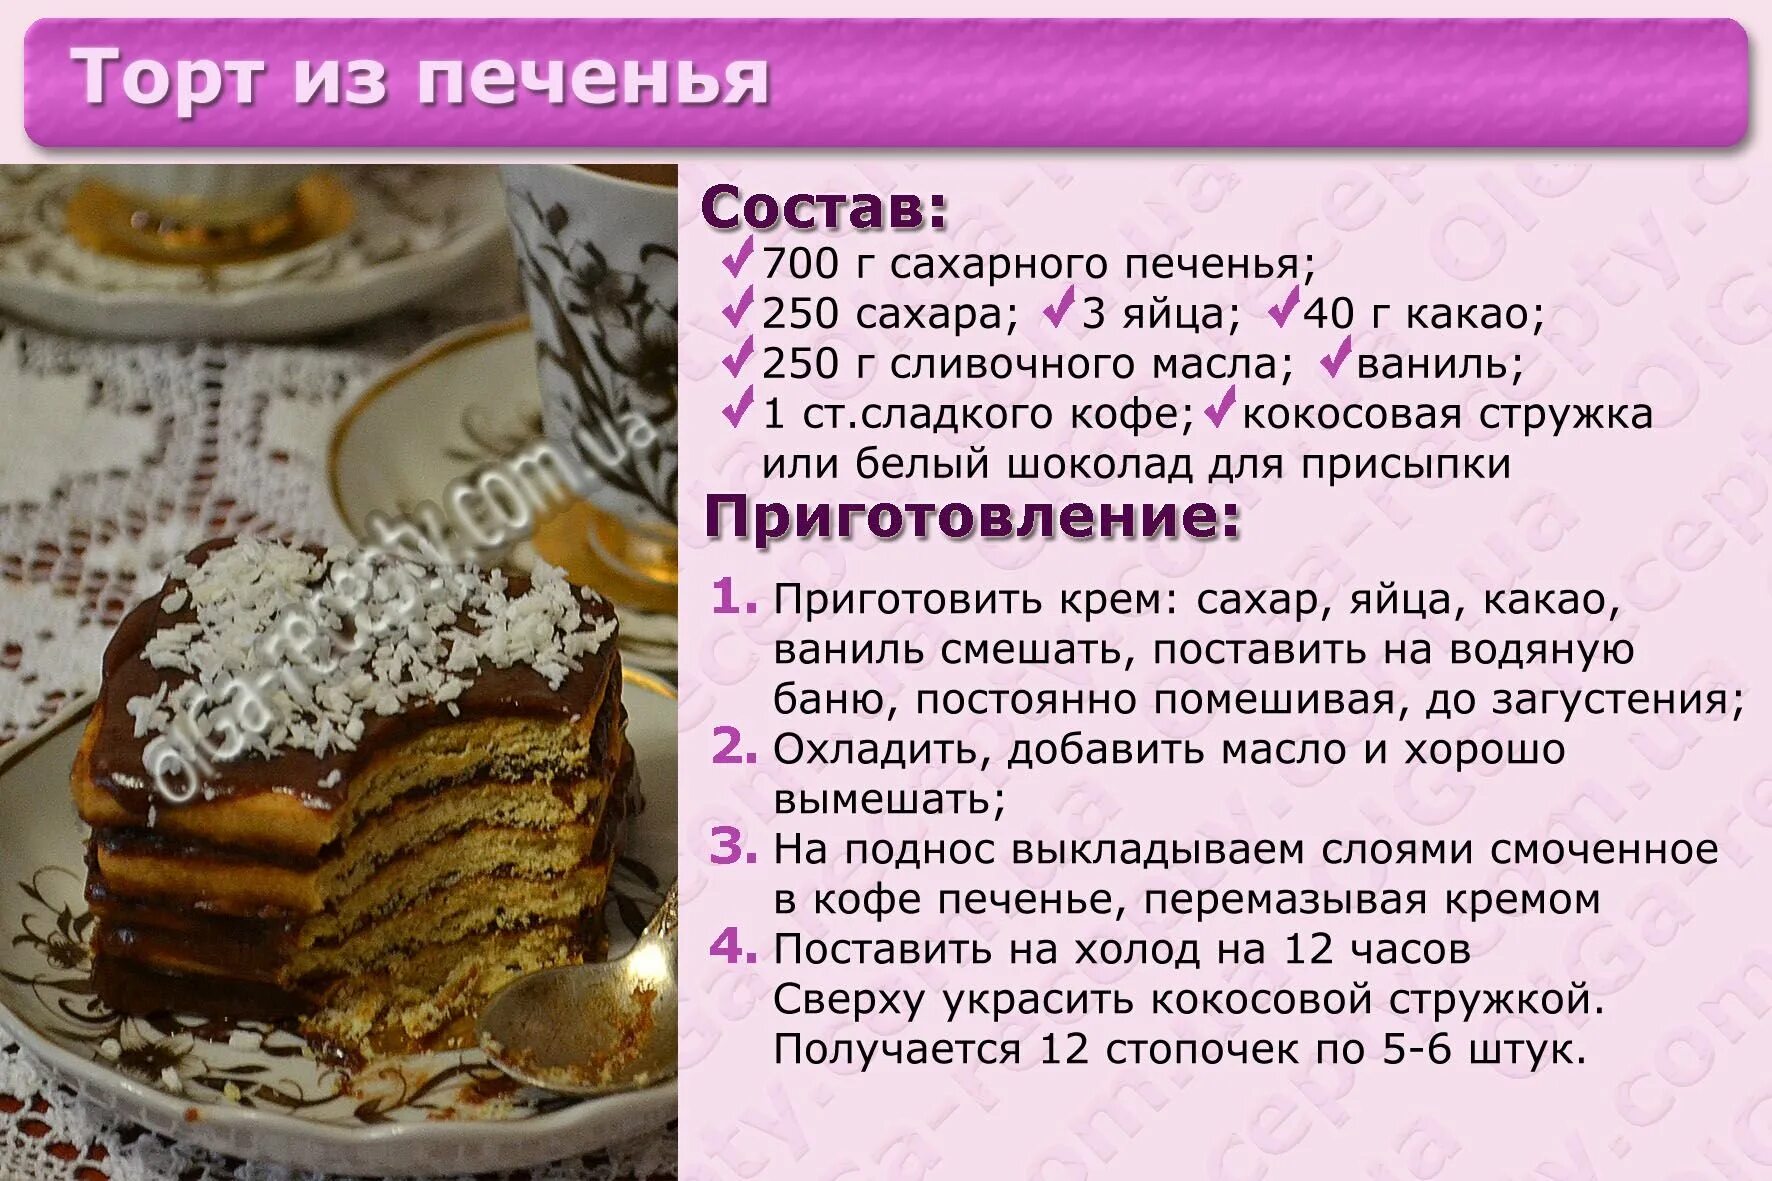 Картинки с рецептами тортов. Несложные рецепты тортов с картинкой. Рецепт торта картинки с описанием. Приготовление торта картинки. Рецепты тортов ру